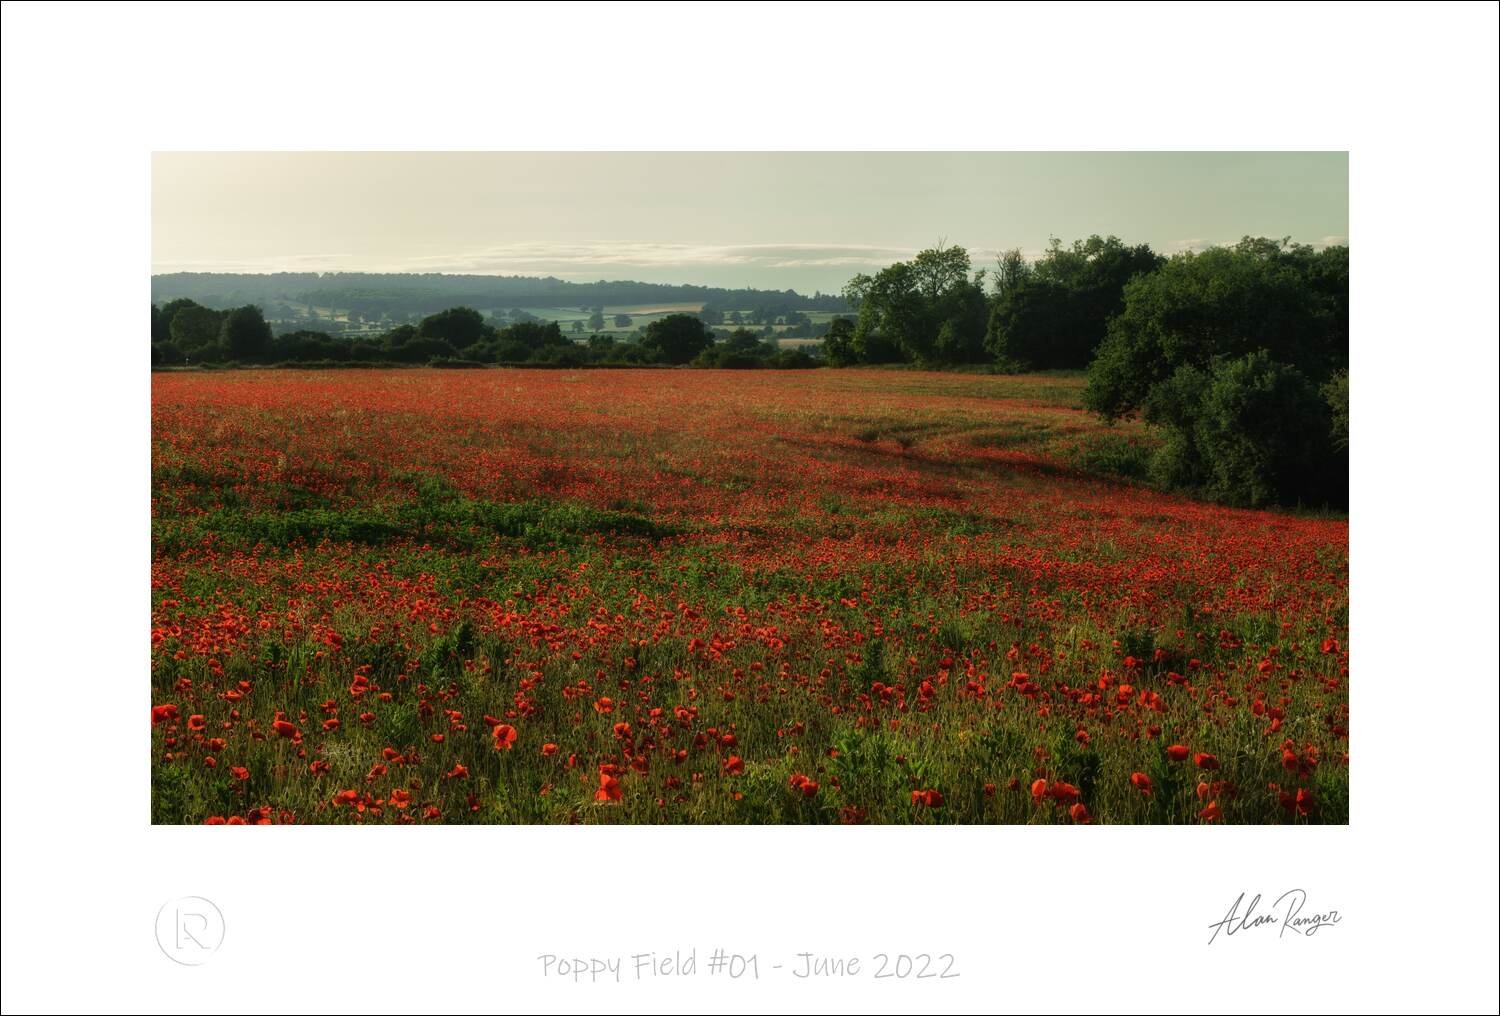 Poppy Field #01 - June 2022.jpg